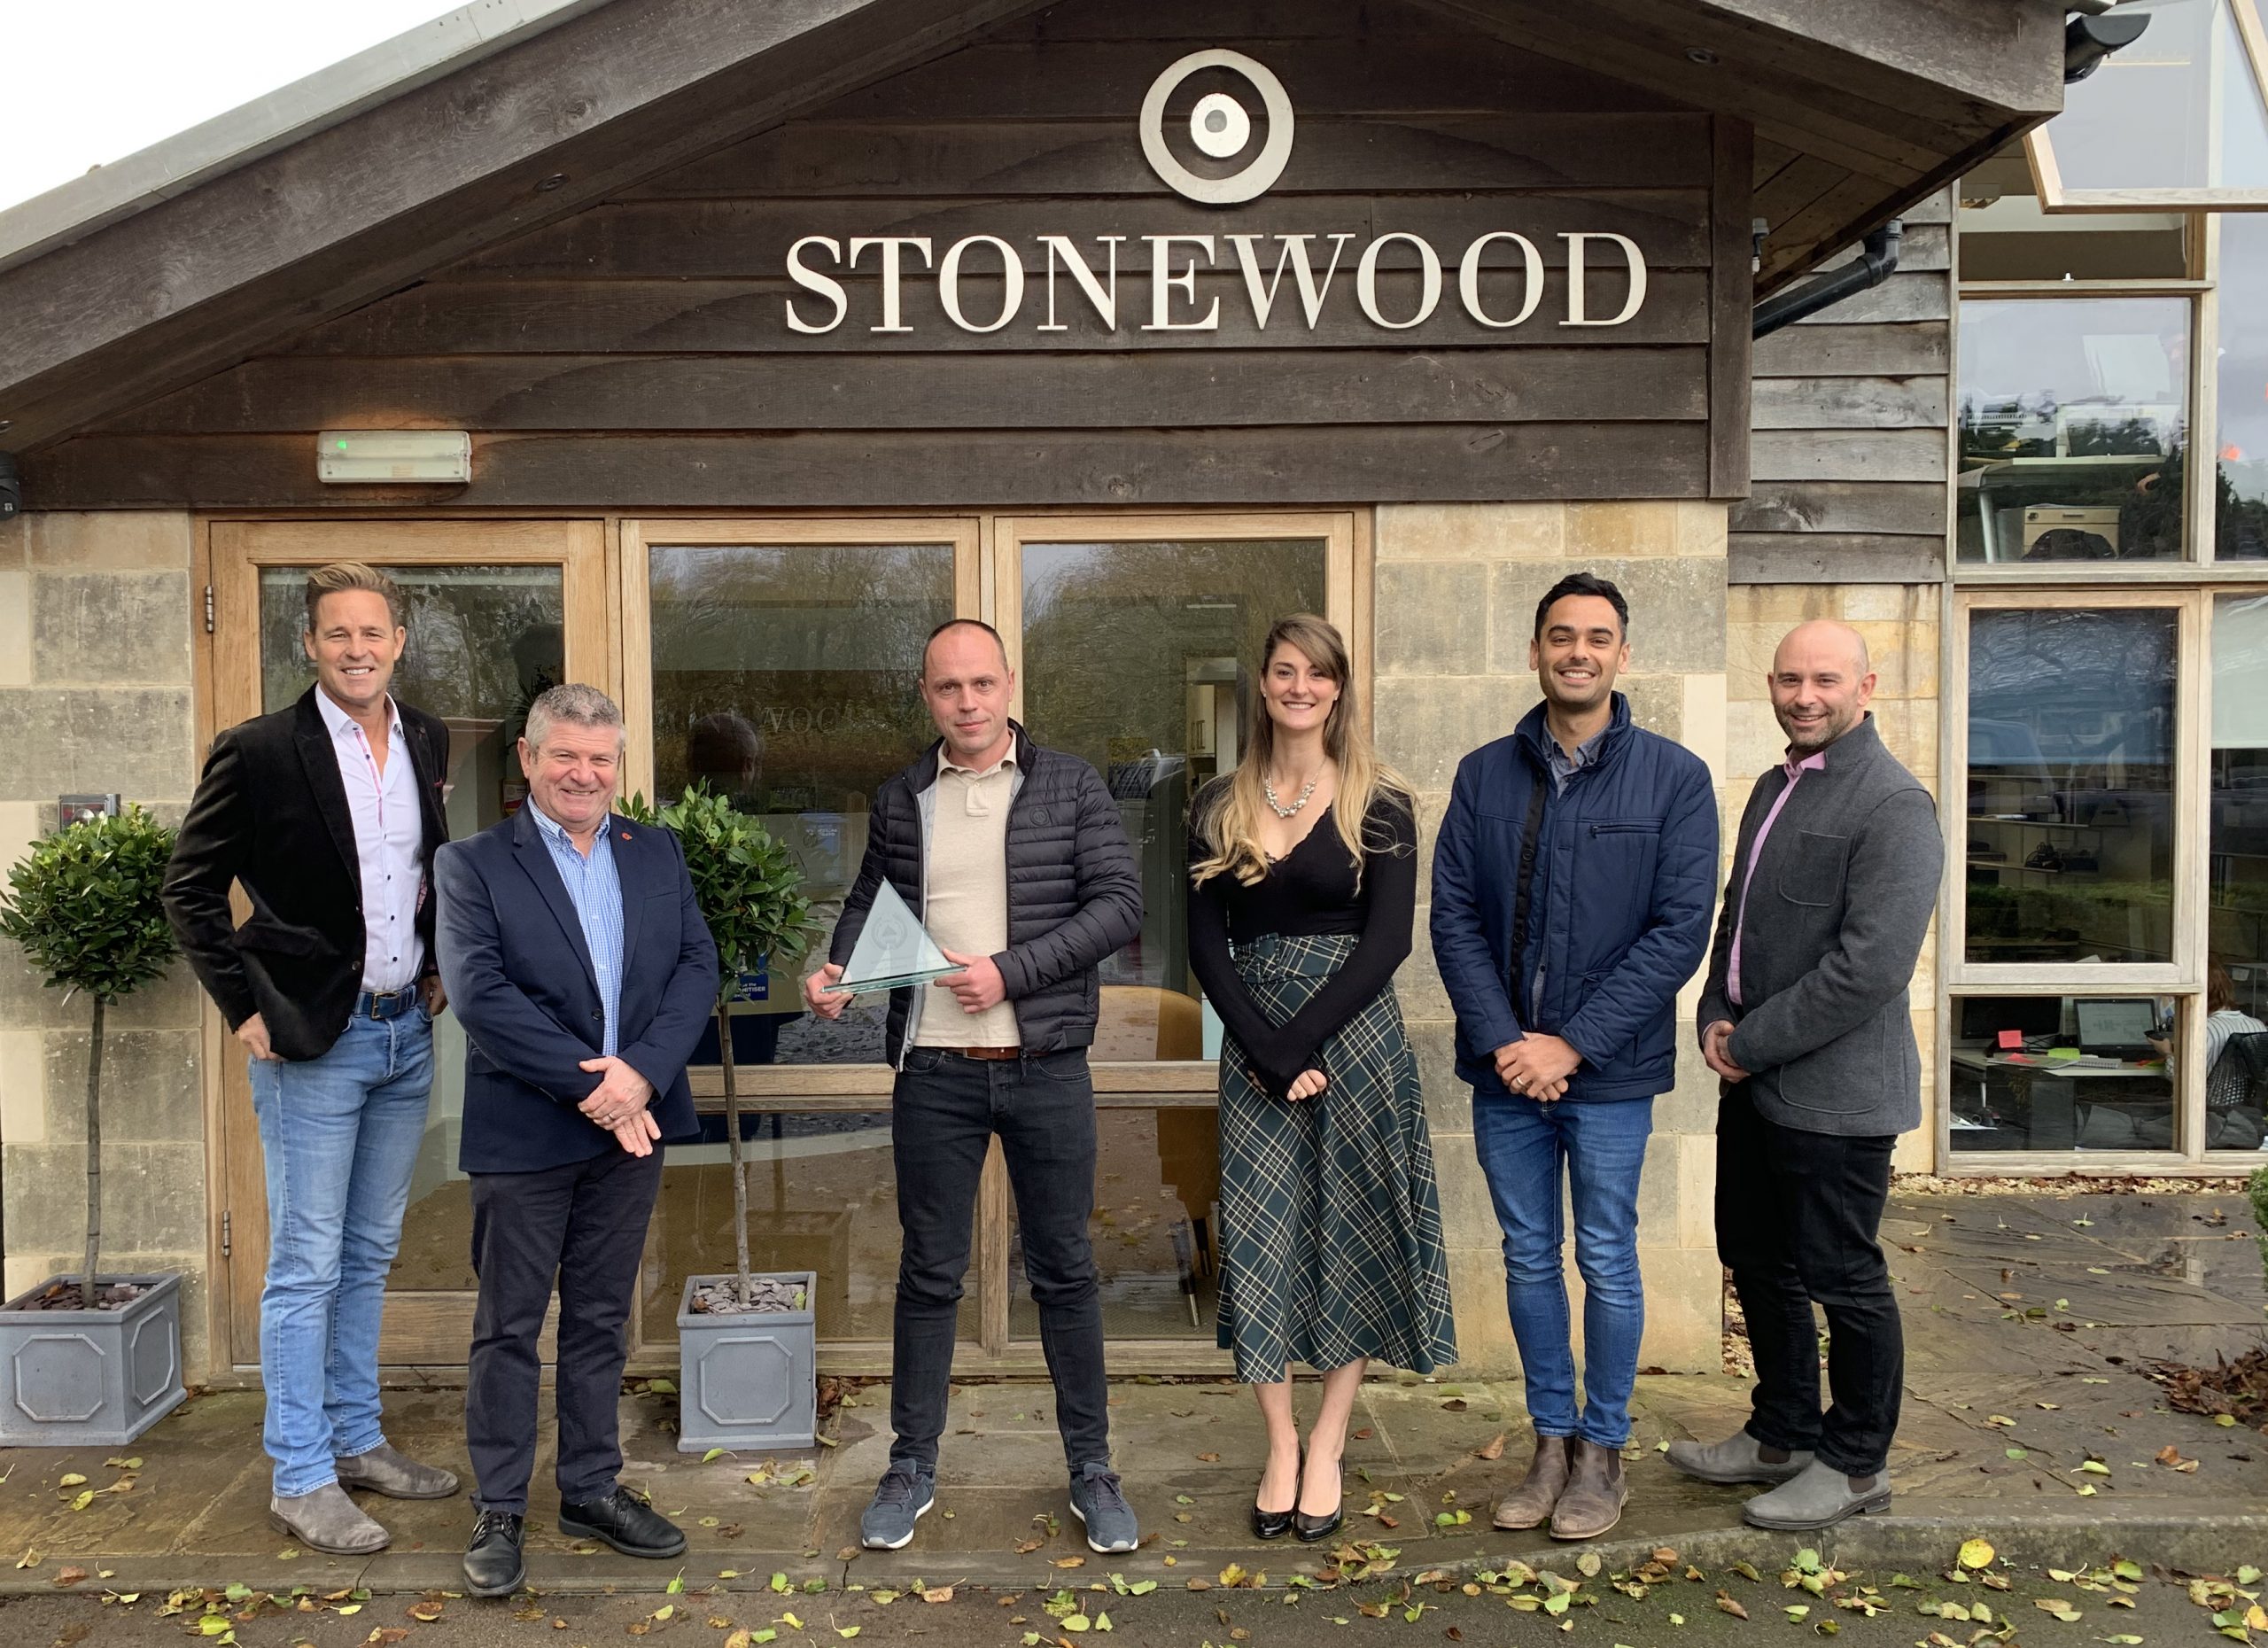 Family building company Stonewood given major safety award by national advisor @StonewoodPart